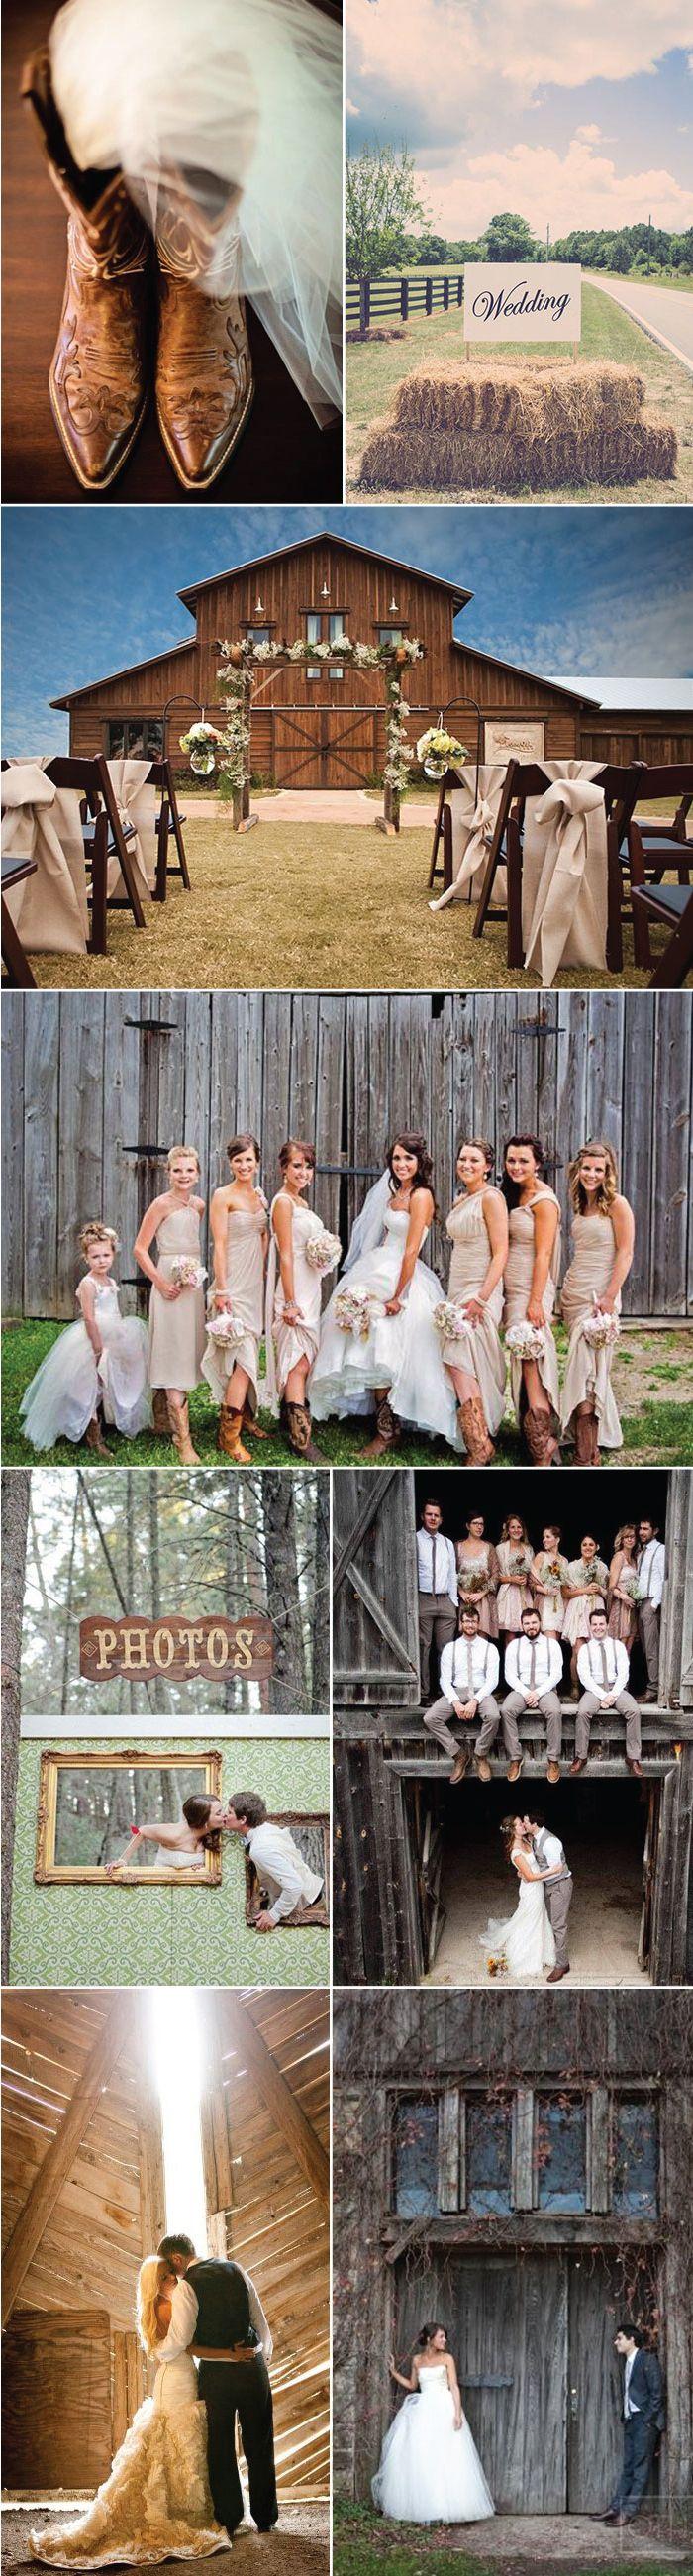 Hochzeit - Wedding Ideas For Barn Weddings   